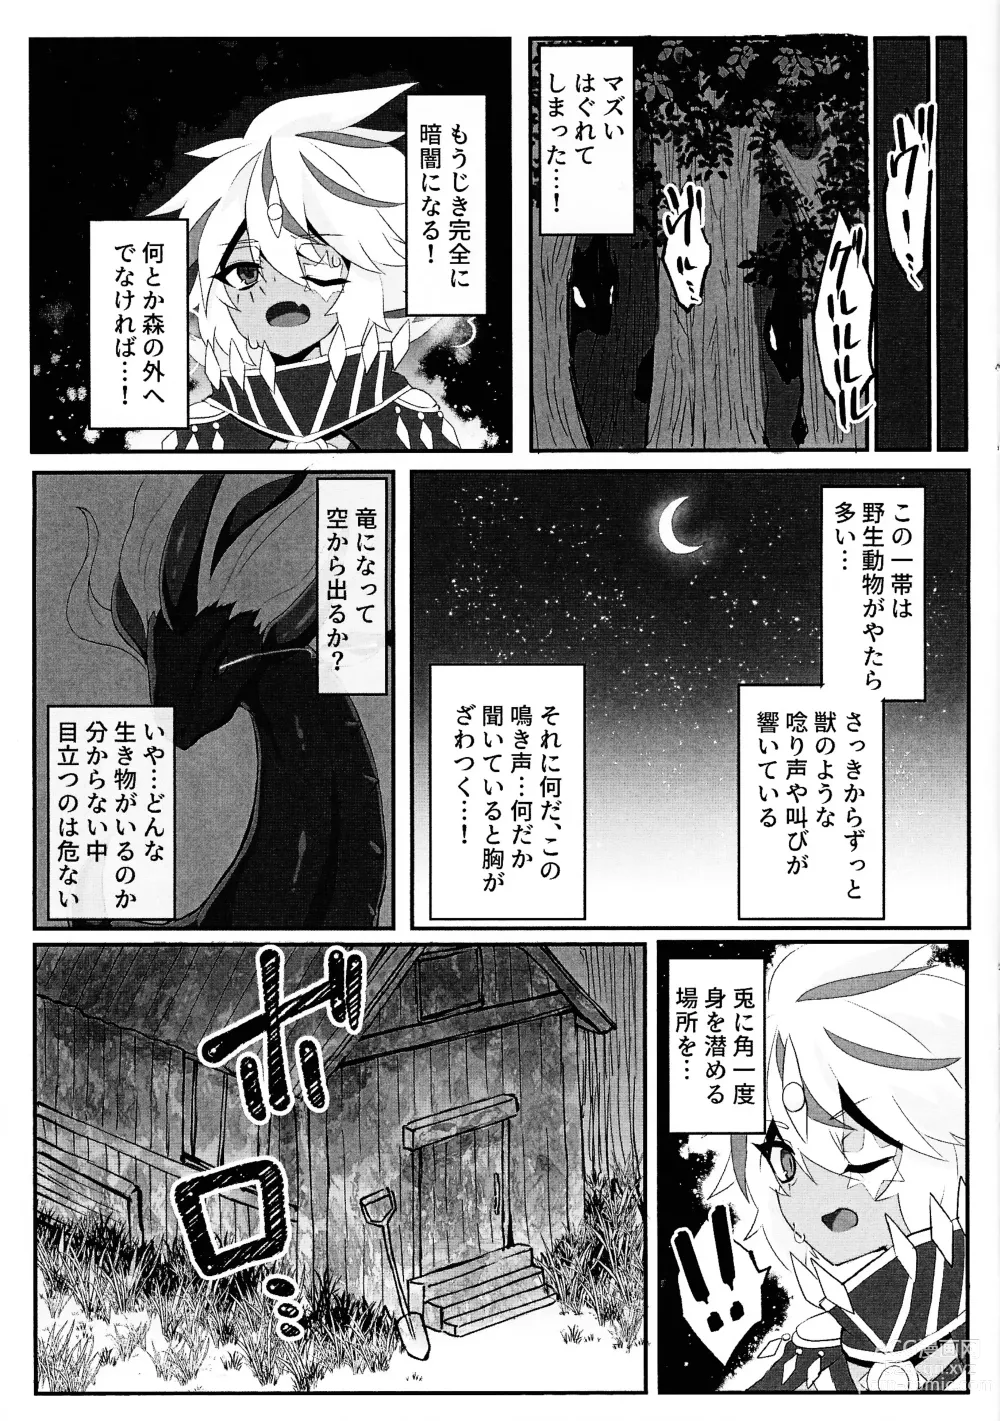 Page 4 of doujinshi Kemono no naku mori